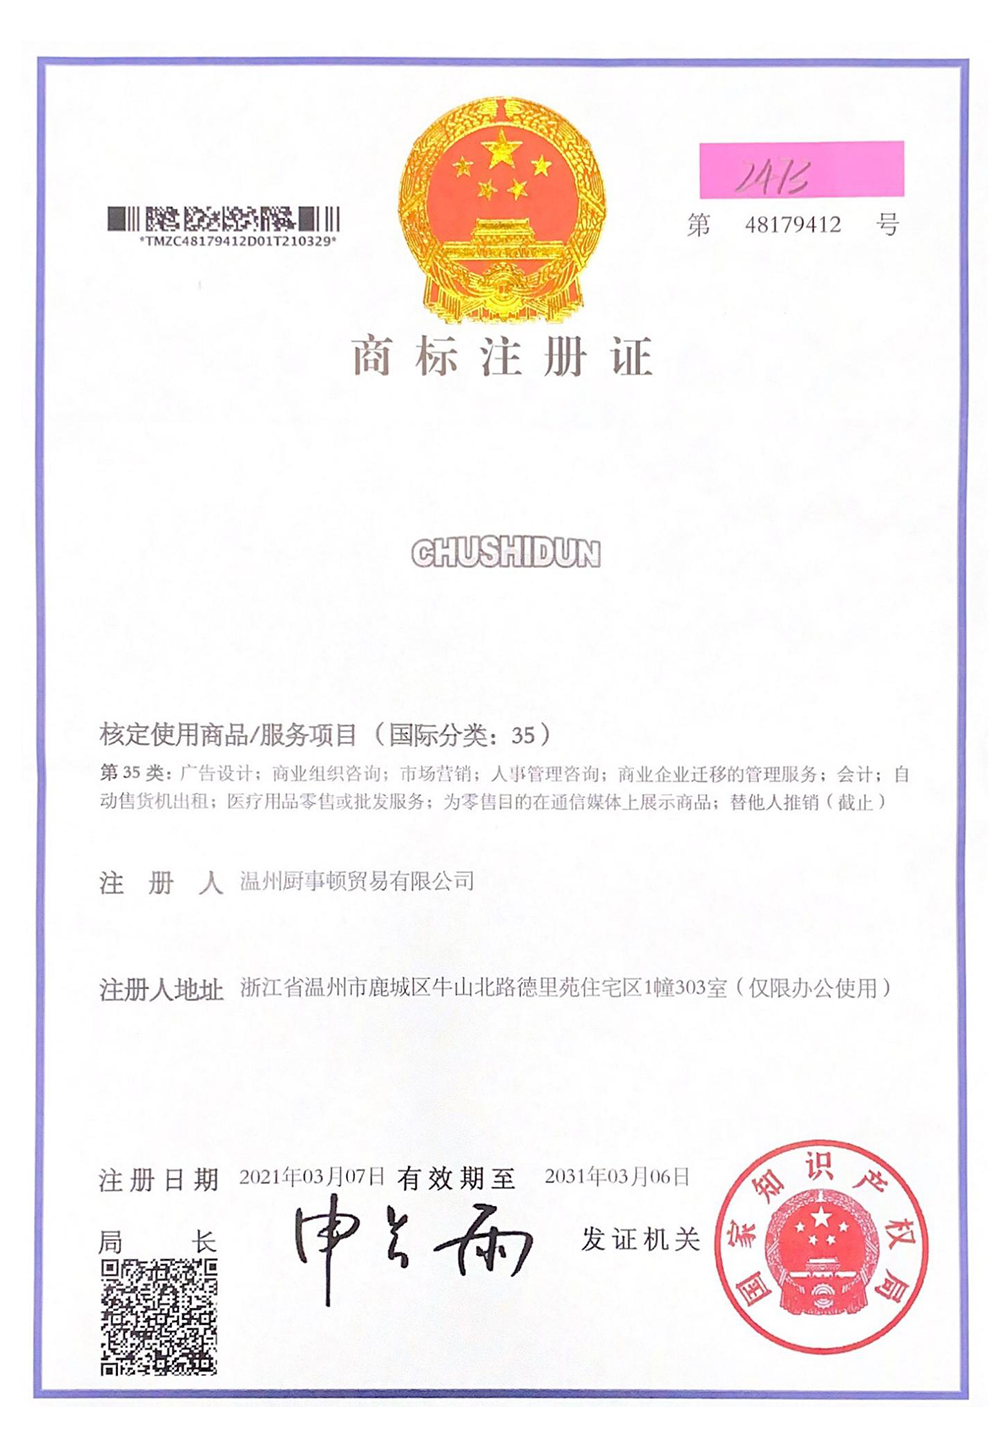 Certifikata e regjistrimit të markës tregtare të enëve të kuzhinës_001